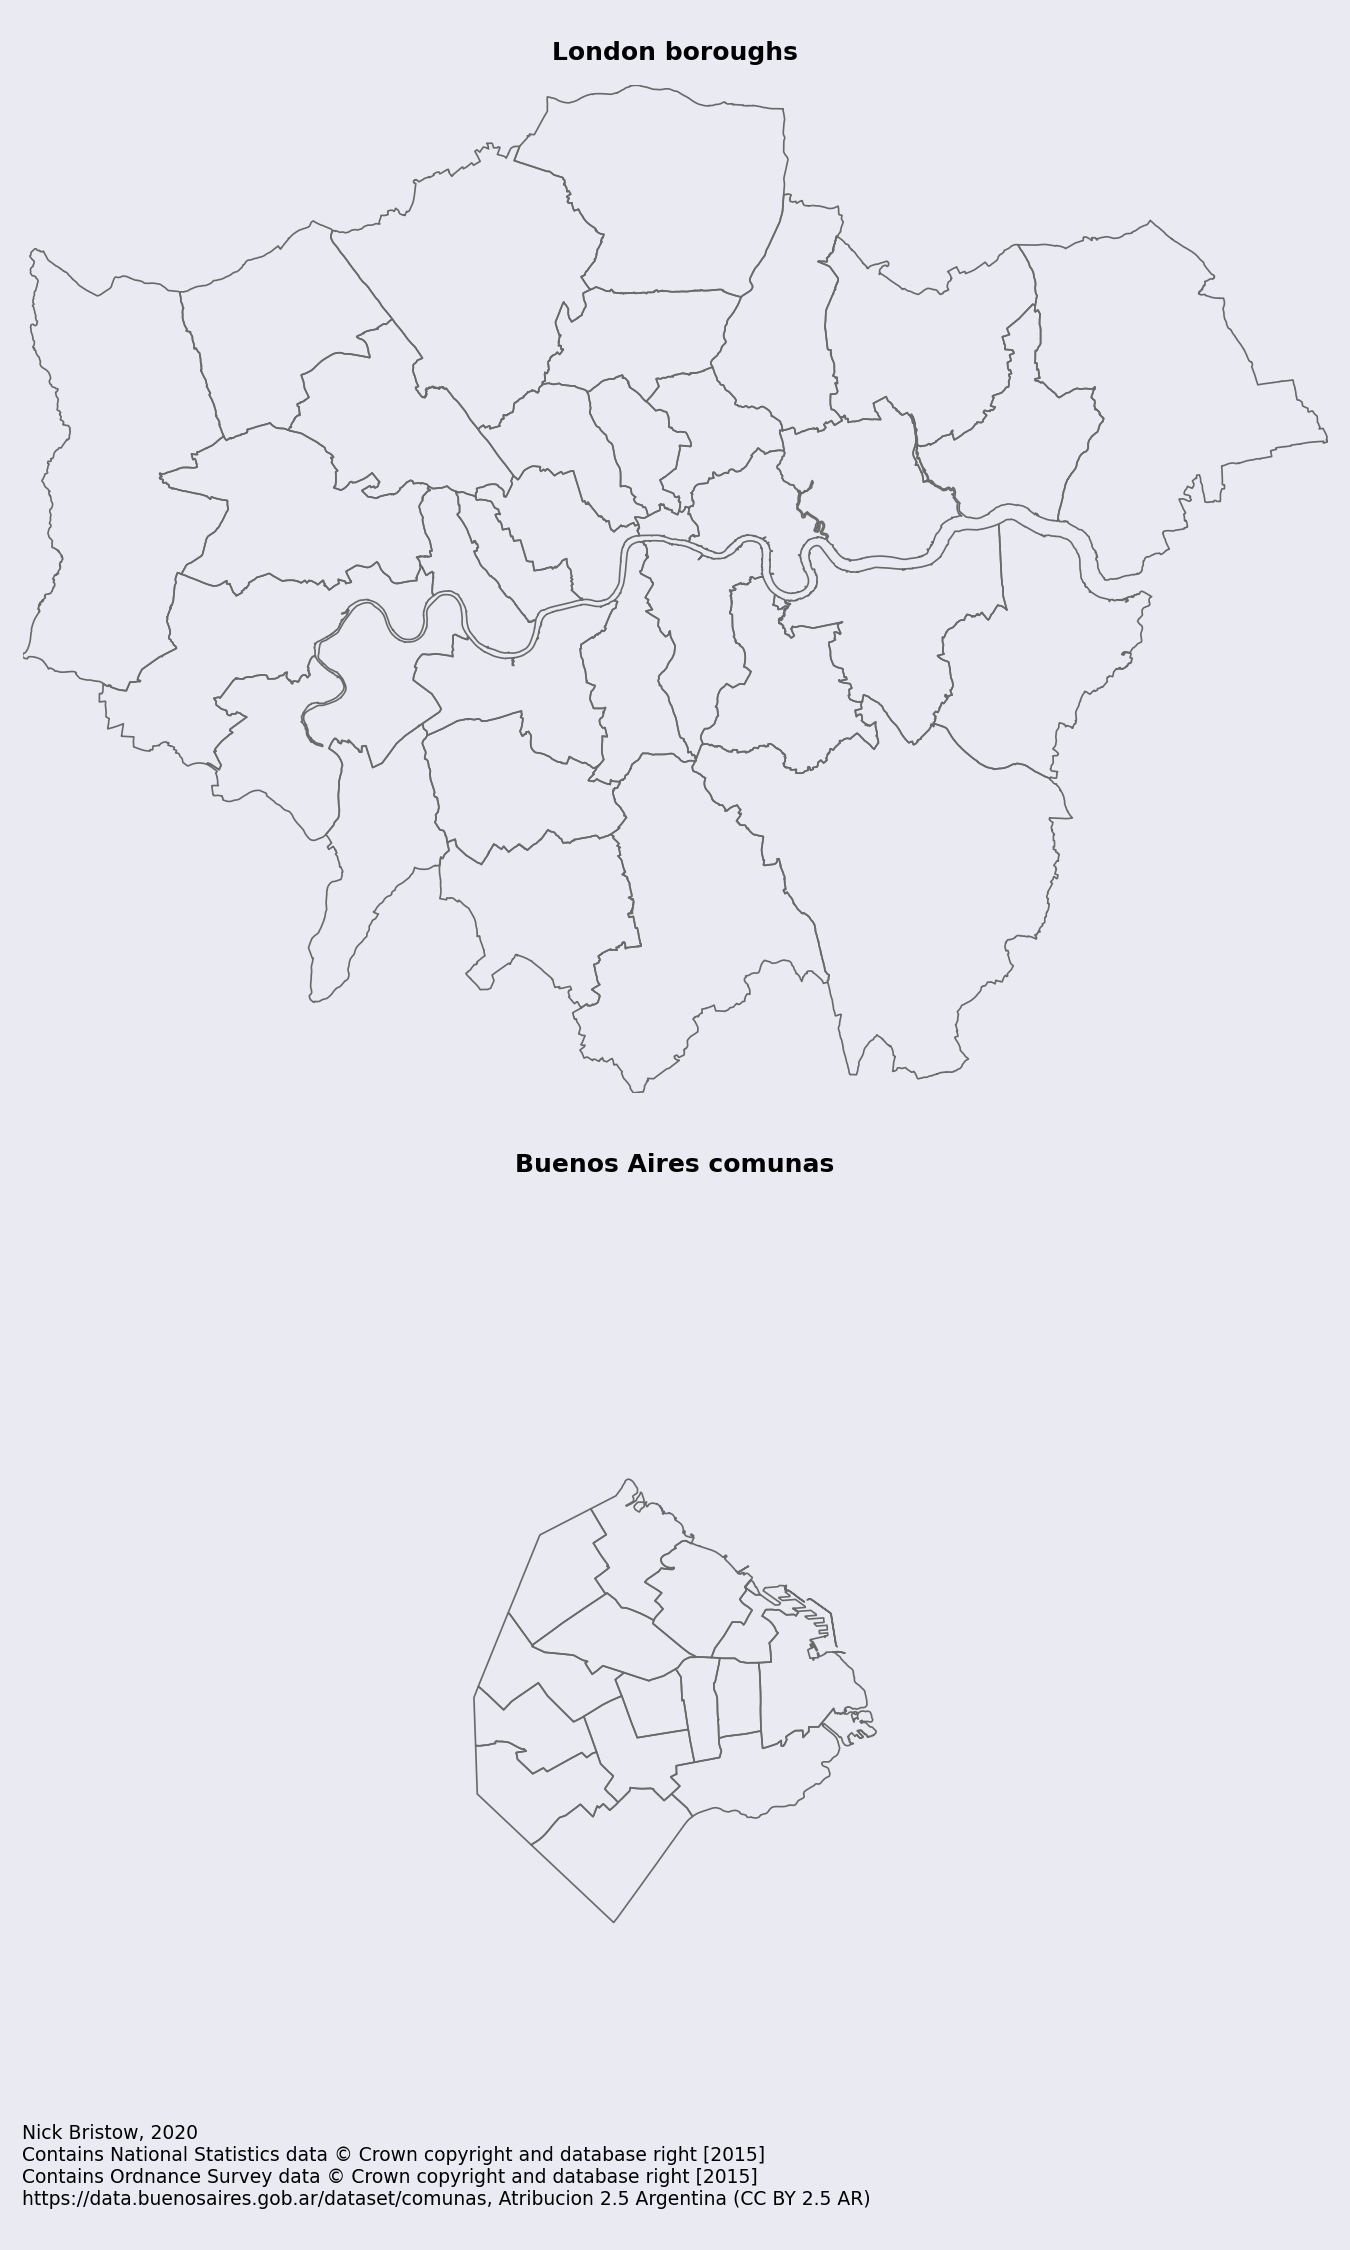 Greater London boroughs, Ciudad Autónoma de Buenos Aires comunas